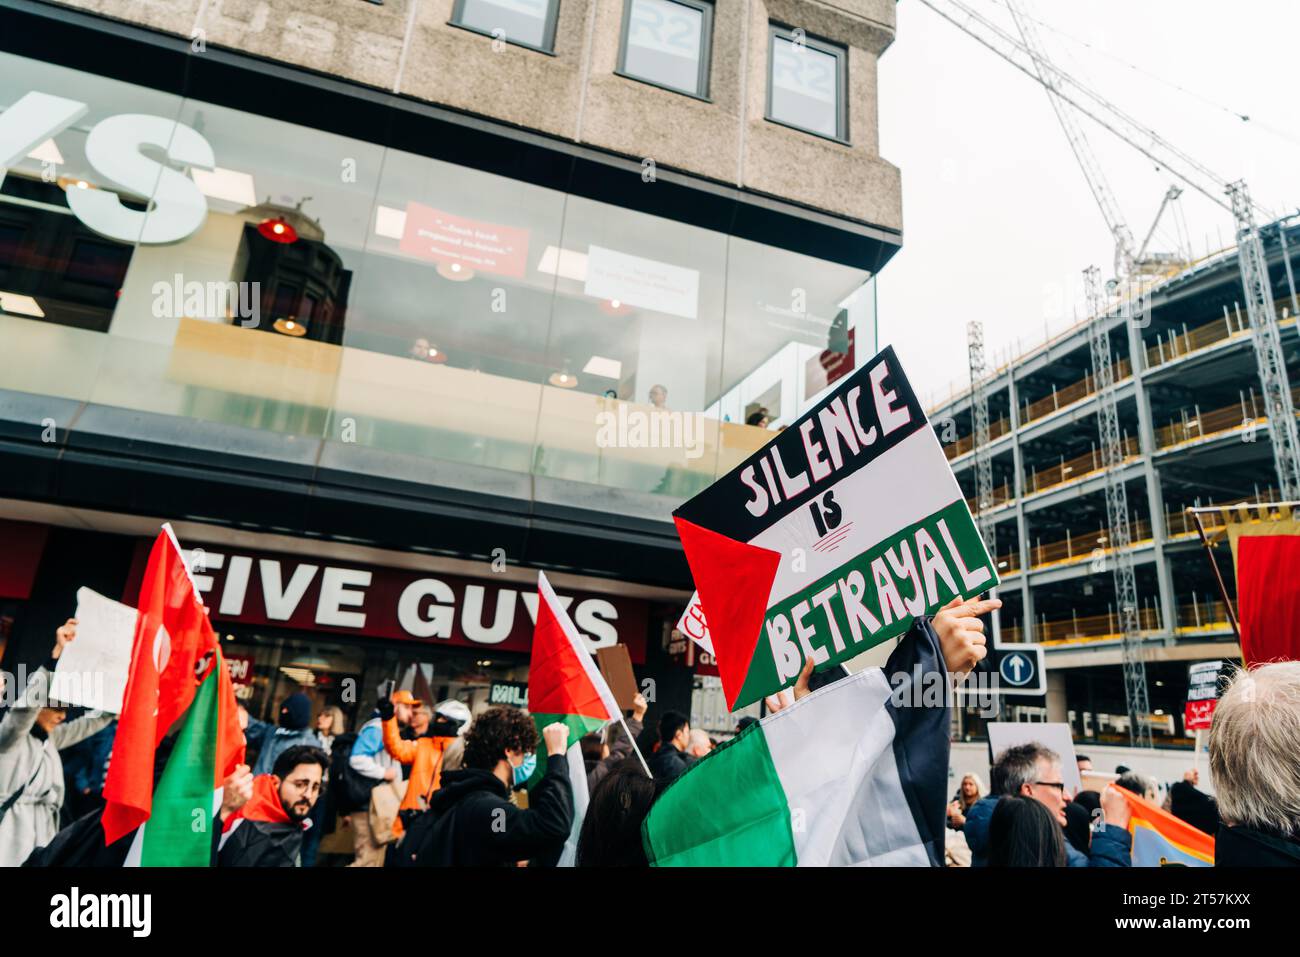 Der Demonstrant hält vor fünf Männern ein Schild mit der Aufschrift "Schweigen ist Verrat" auf der palästinensischen Flagge. Newcastle upon Tyne, England, Großbritannien - 28. Oktober 2023. Stockfoto